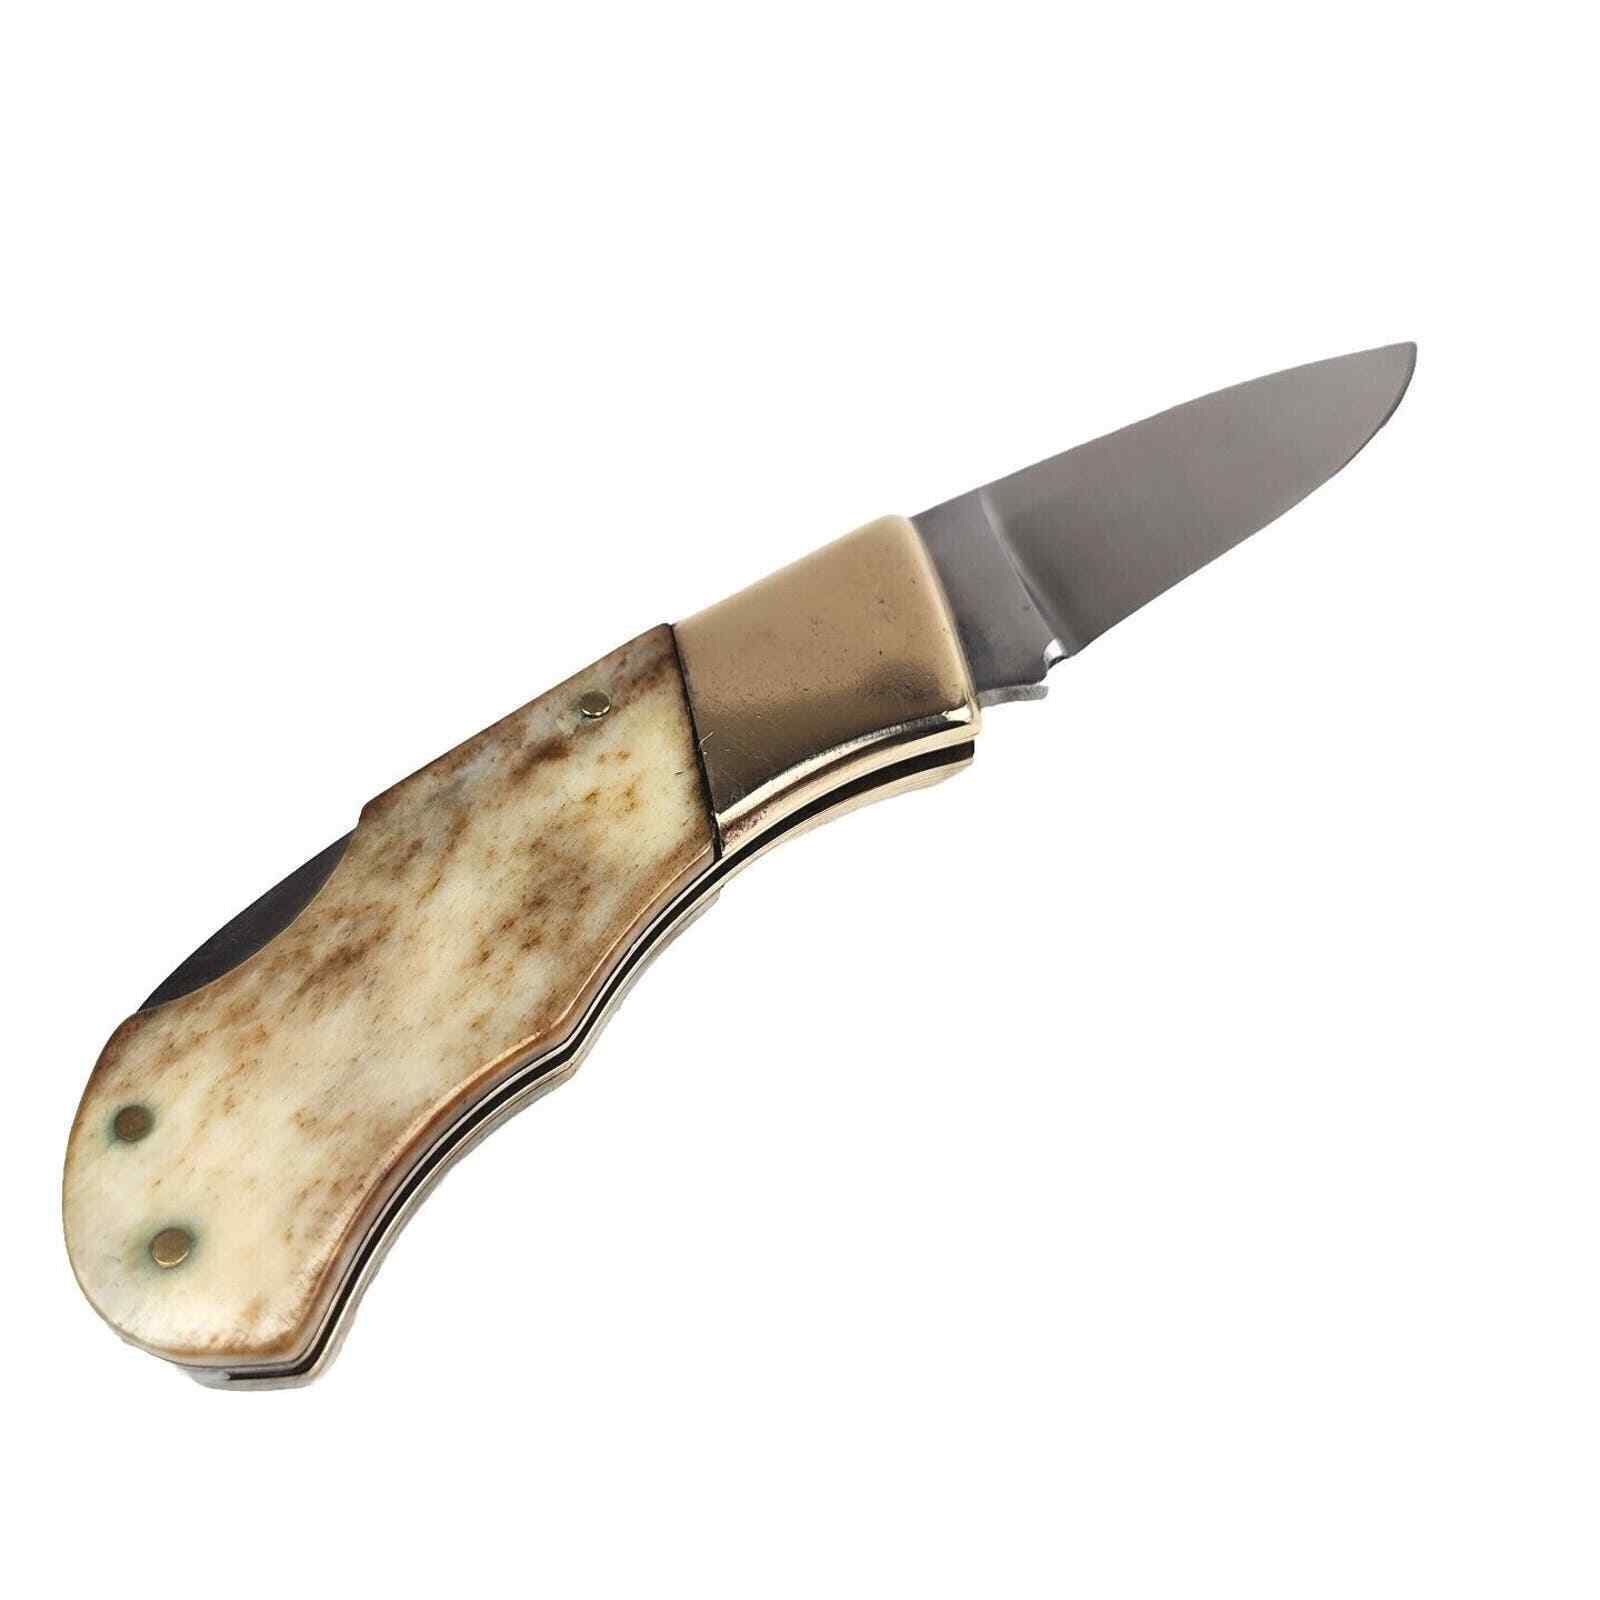 Vintage Parker Cut Co. Sidewinder Pocket Knife Made in Japan, Smooth Bone